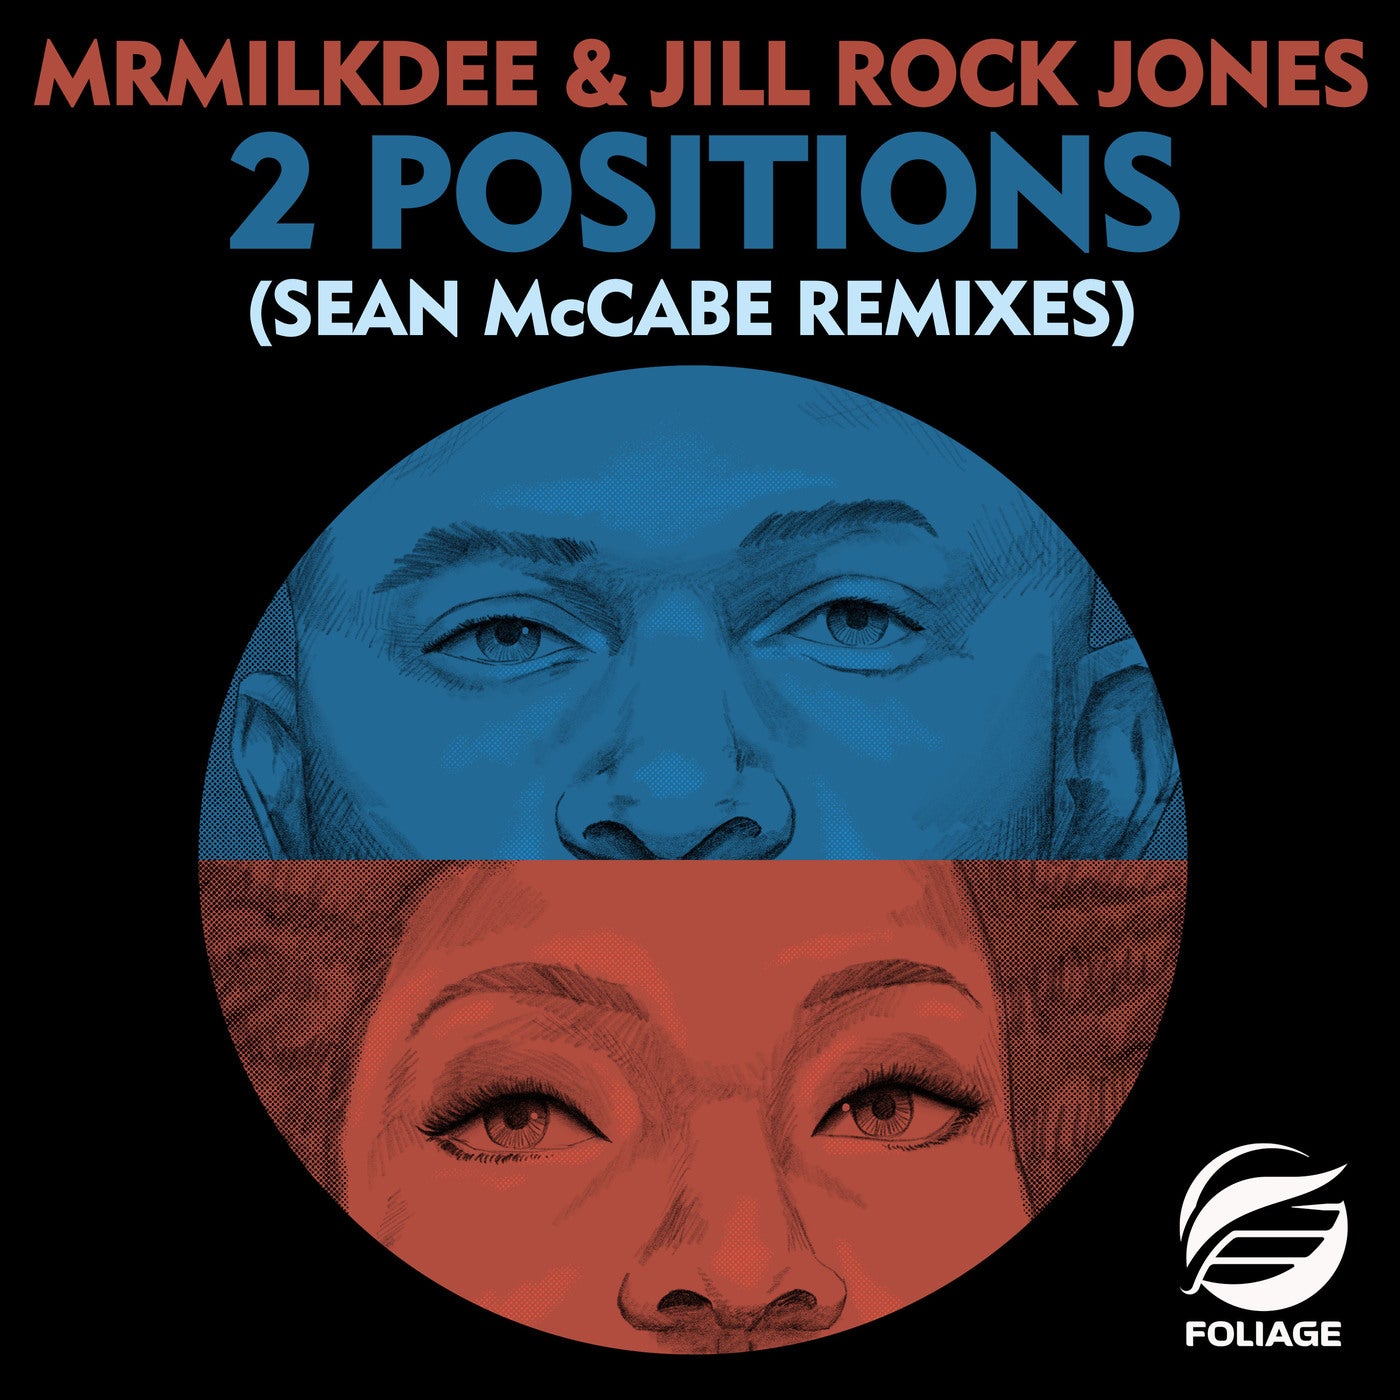 2 Positions - Sean McCabe Remixes